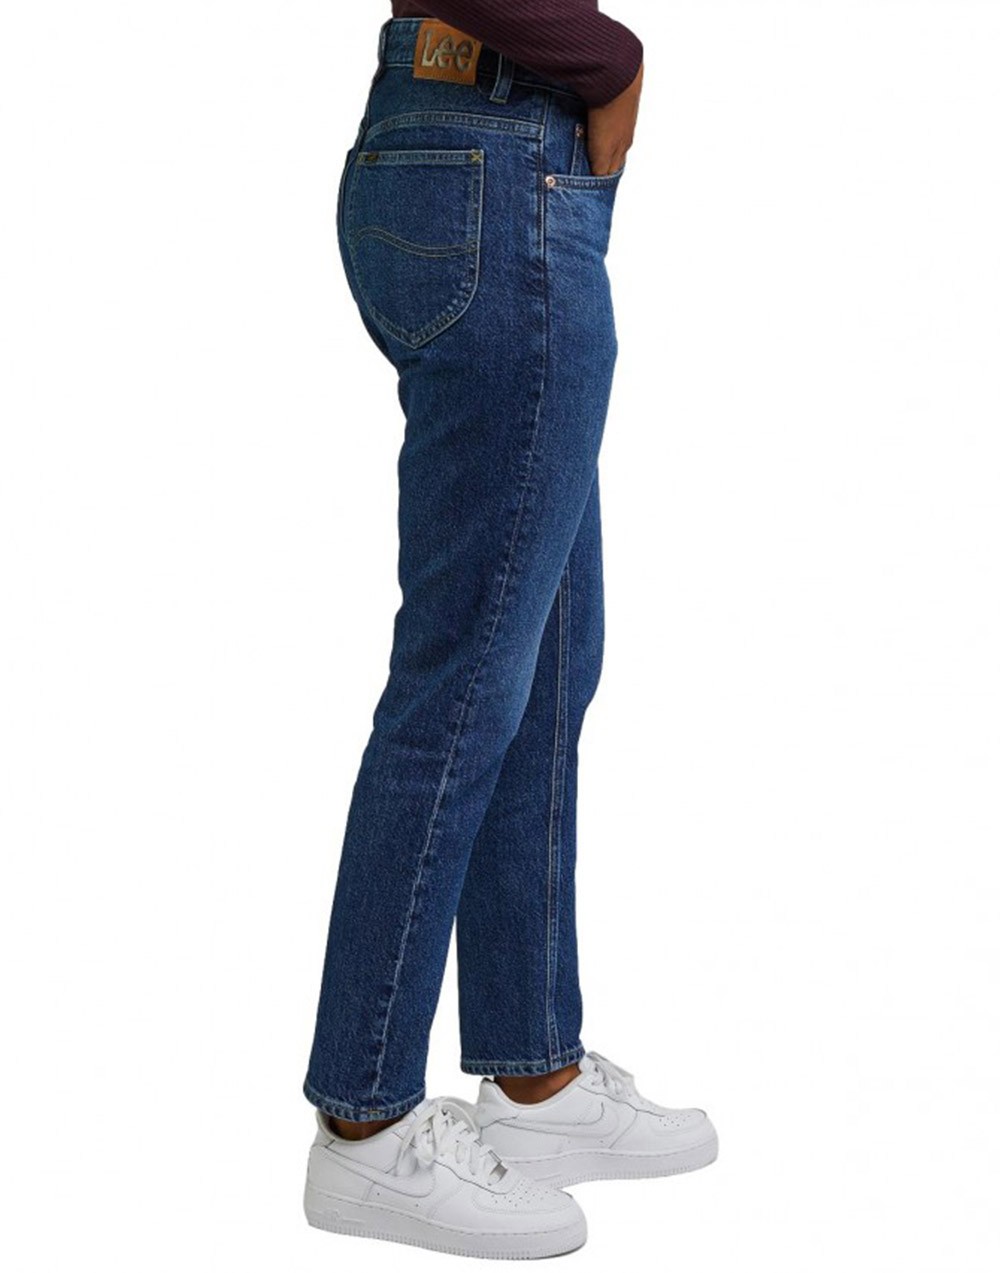 Lee Spodnie Damskie Rider Jeans Indigo Revival 112346312